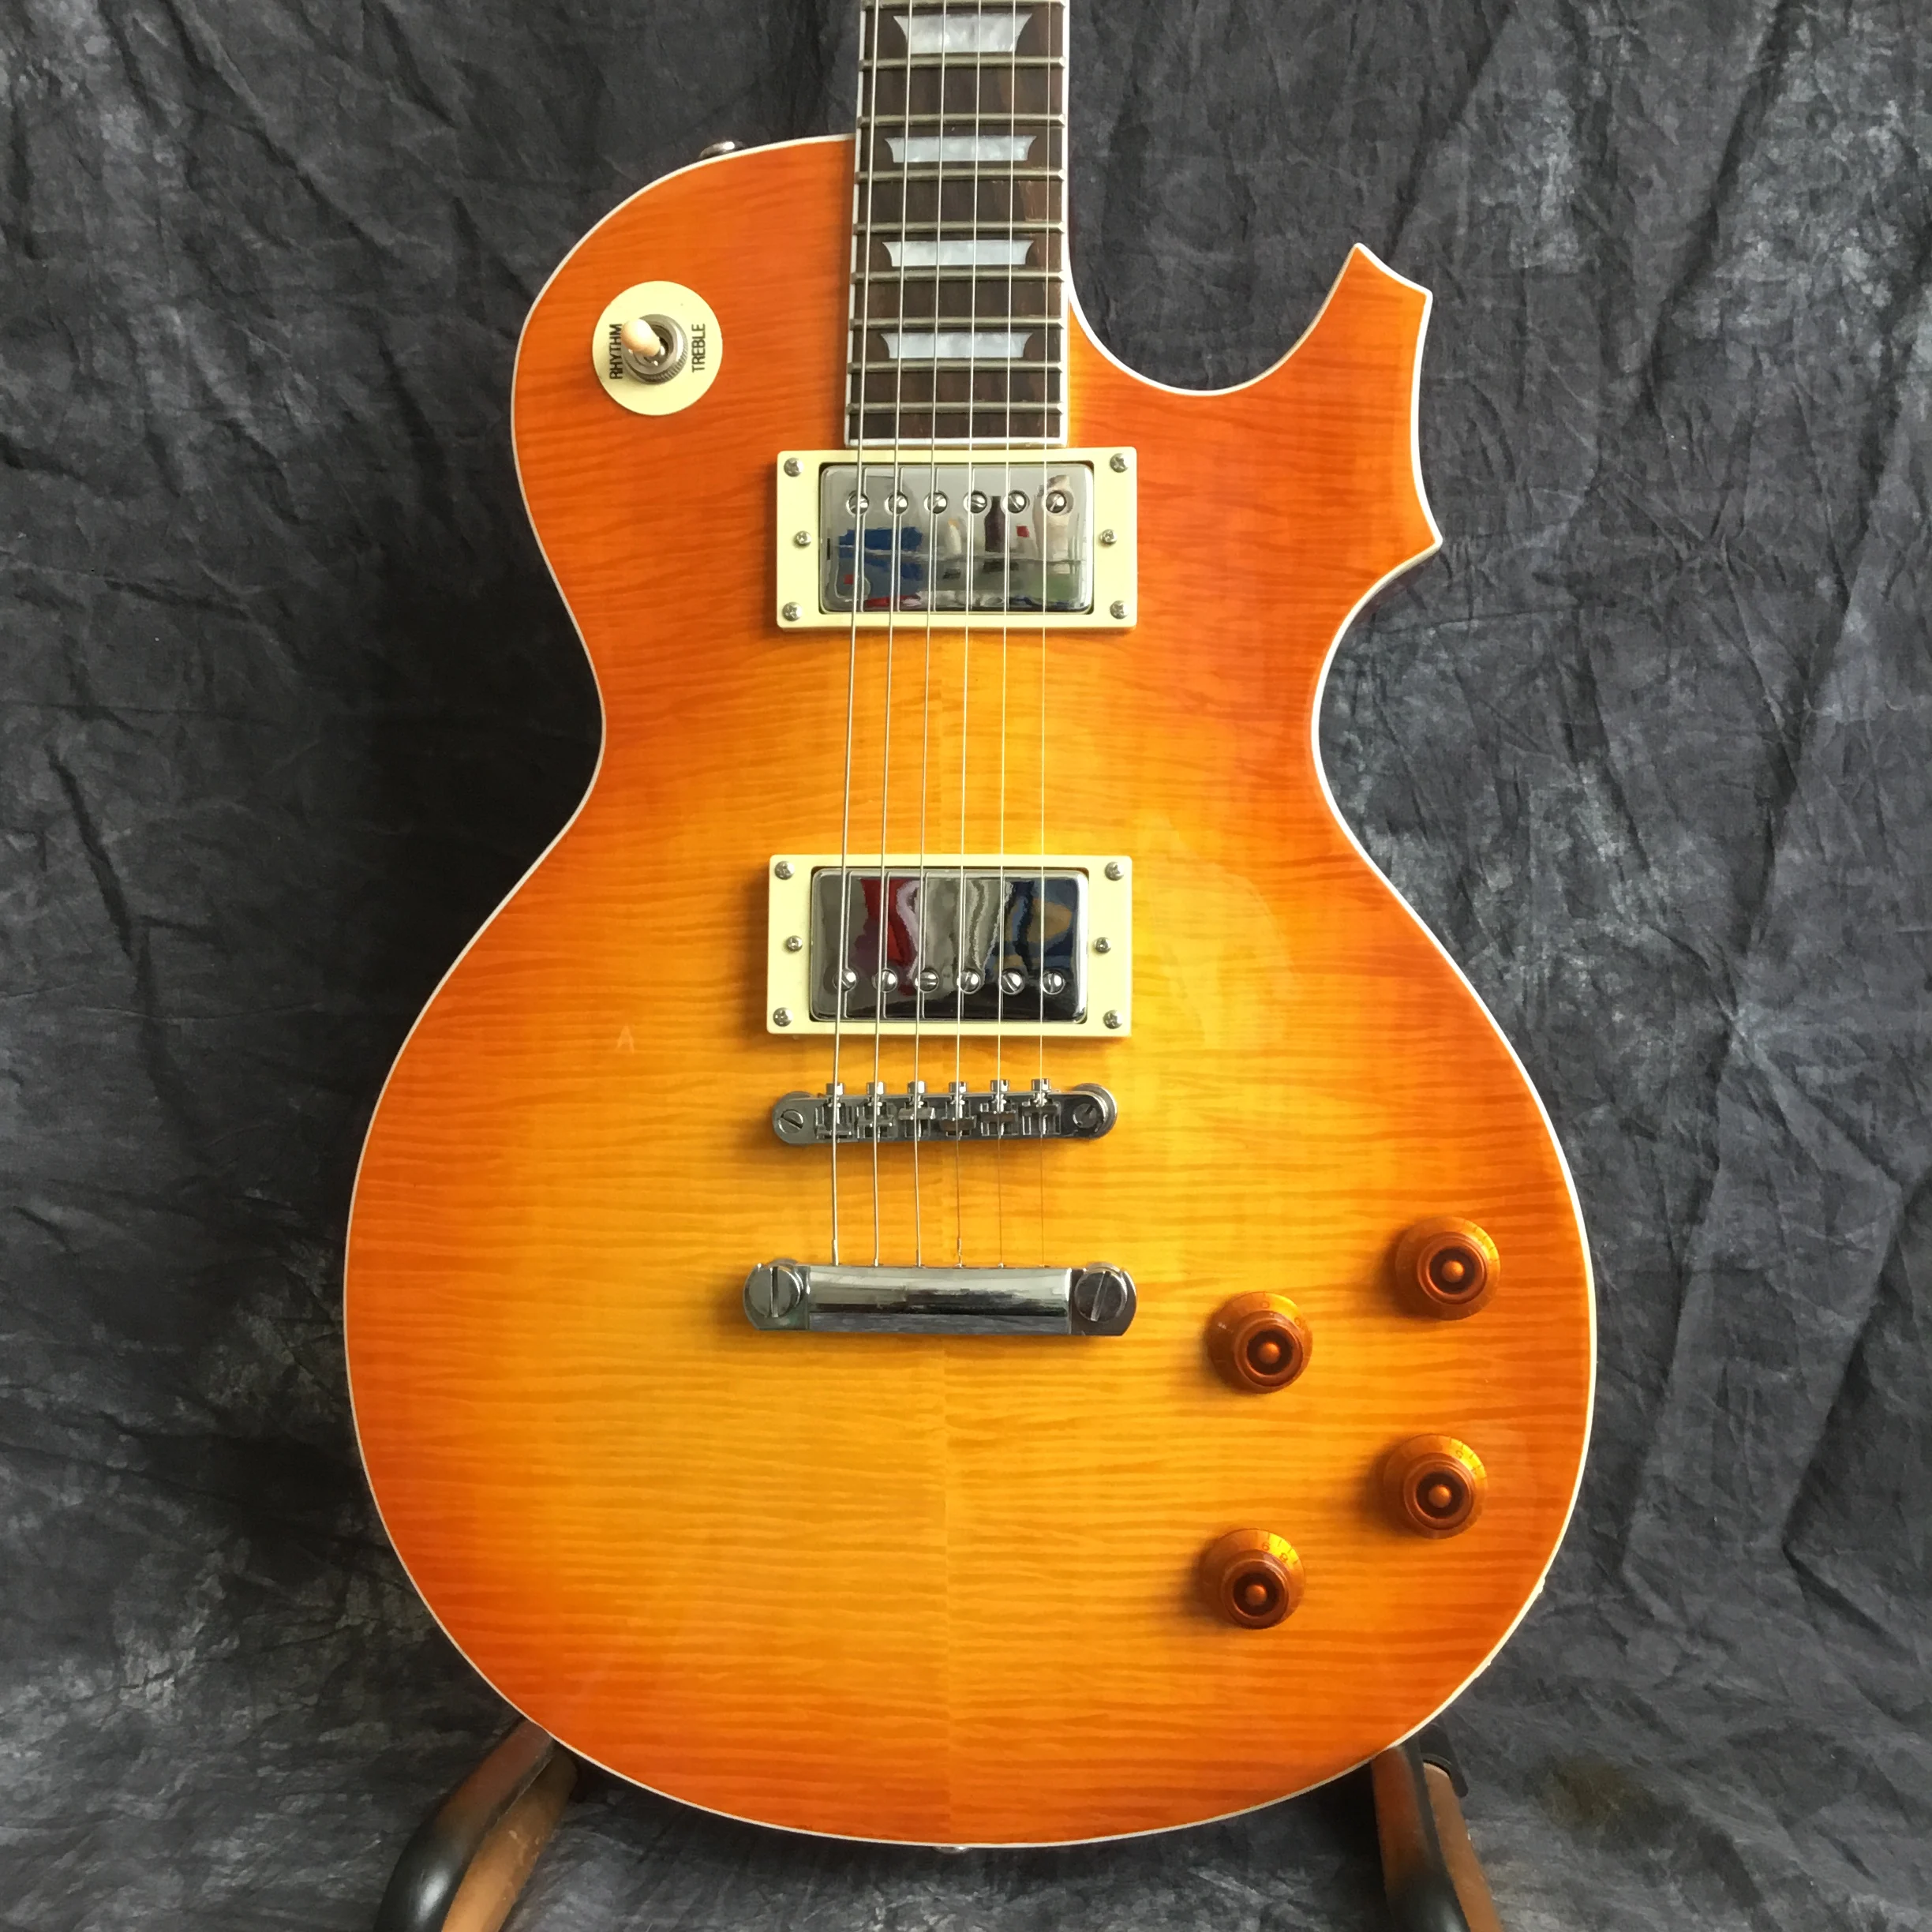 Suneye, Высококачественная электрогитара, Sunburst tiger color flame standard gitaar гитара. Мёд цвет